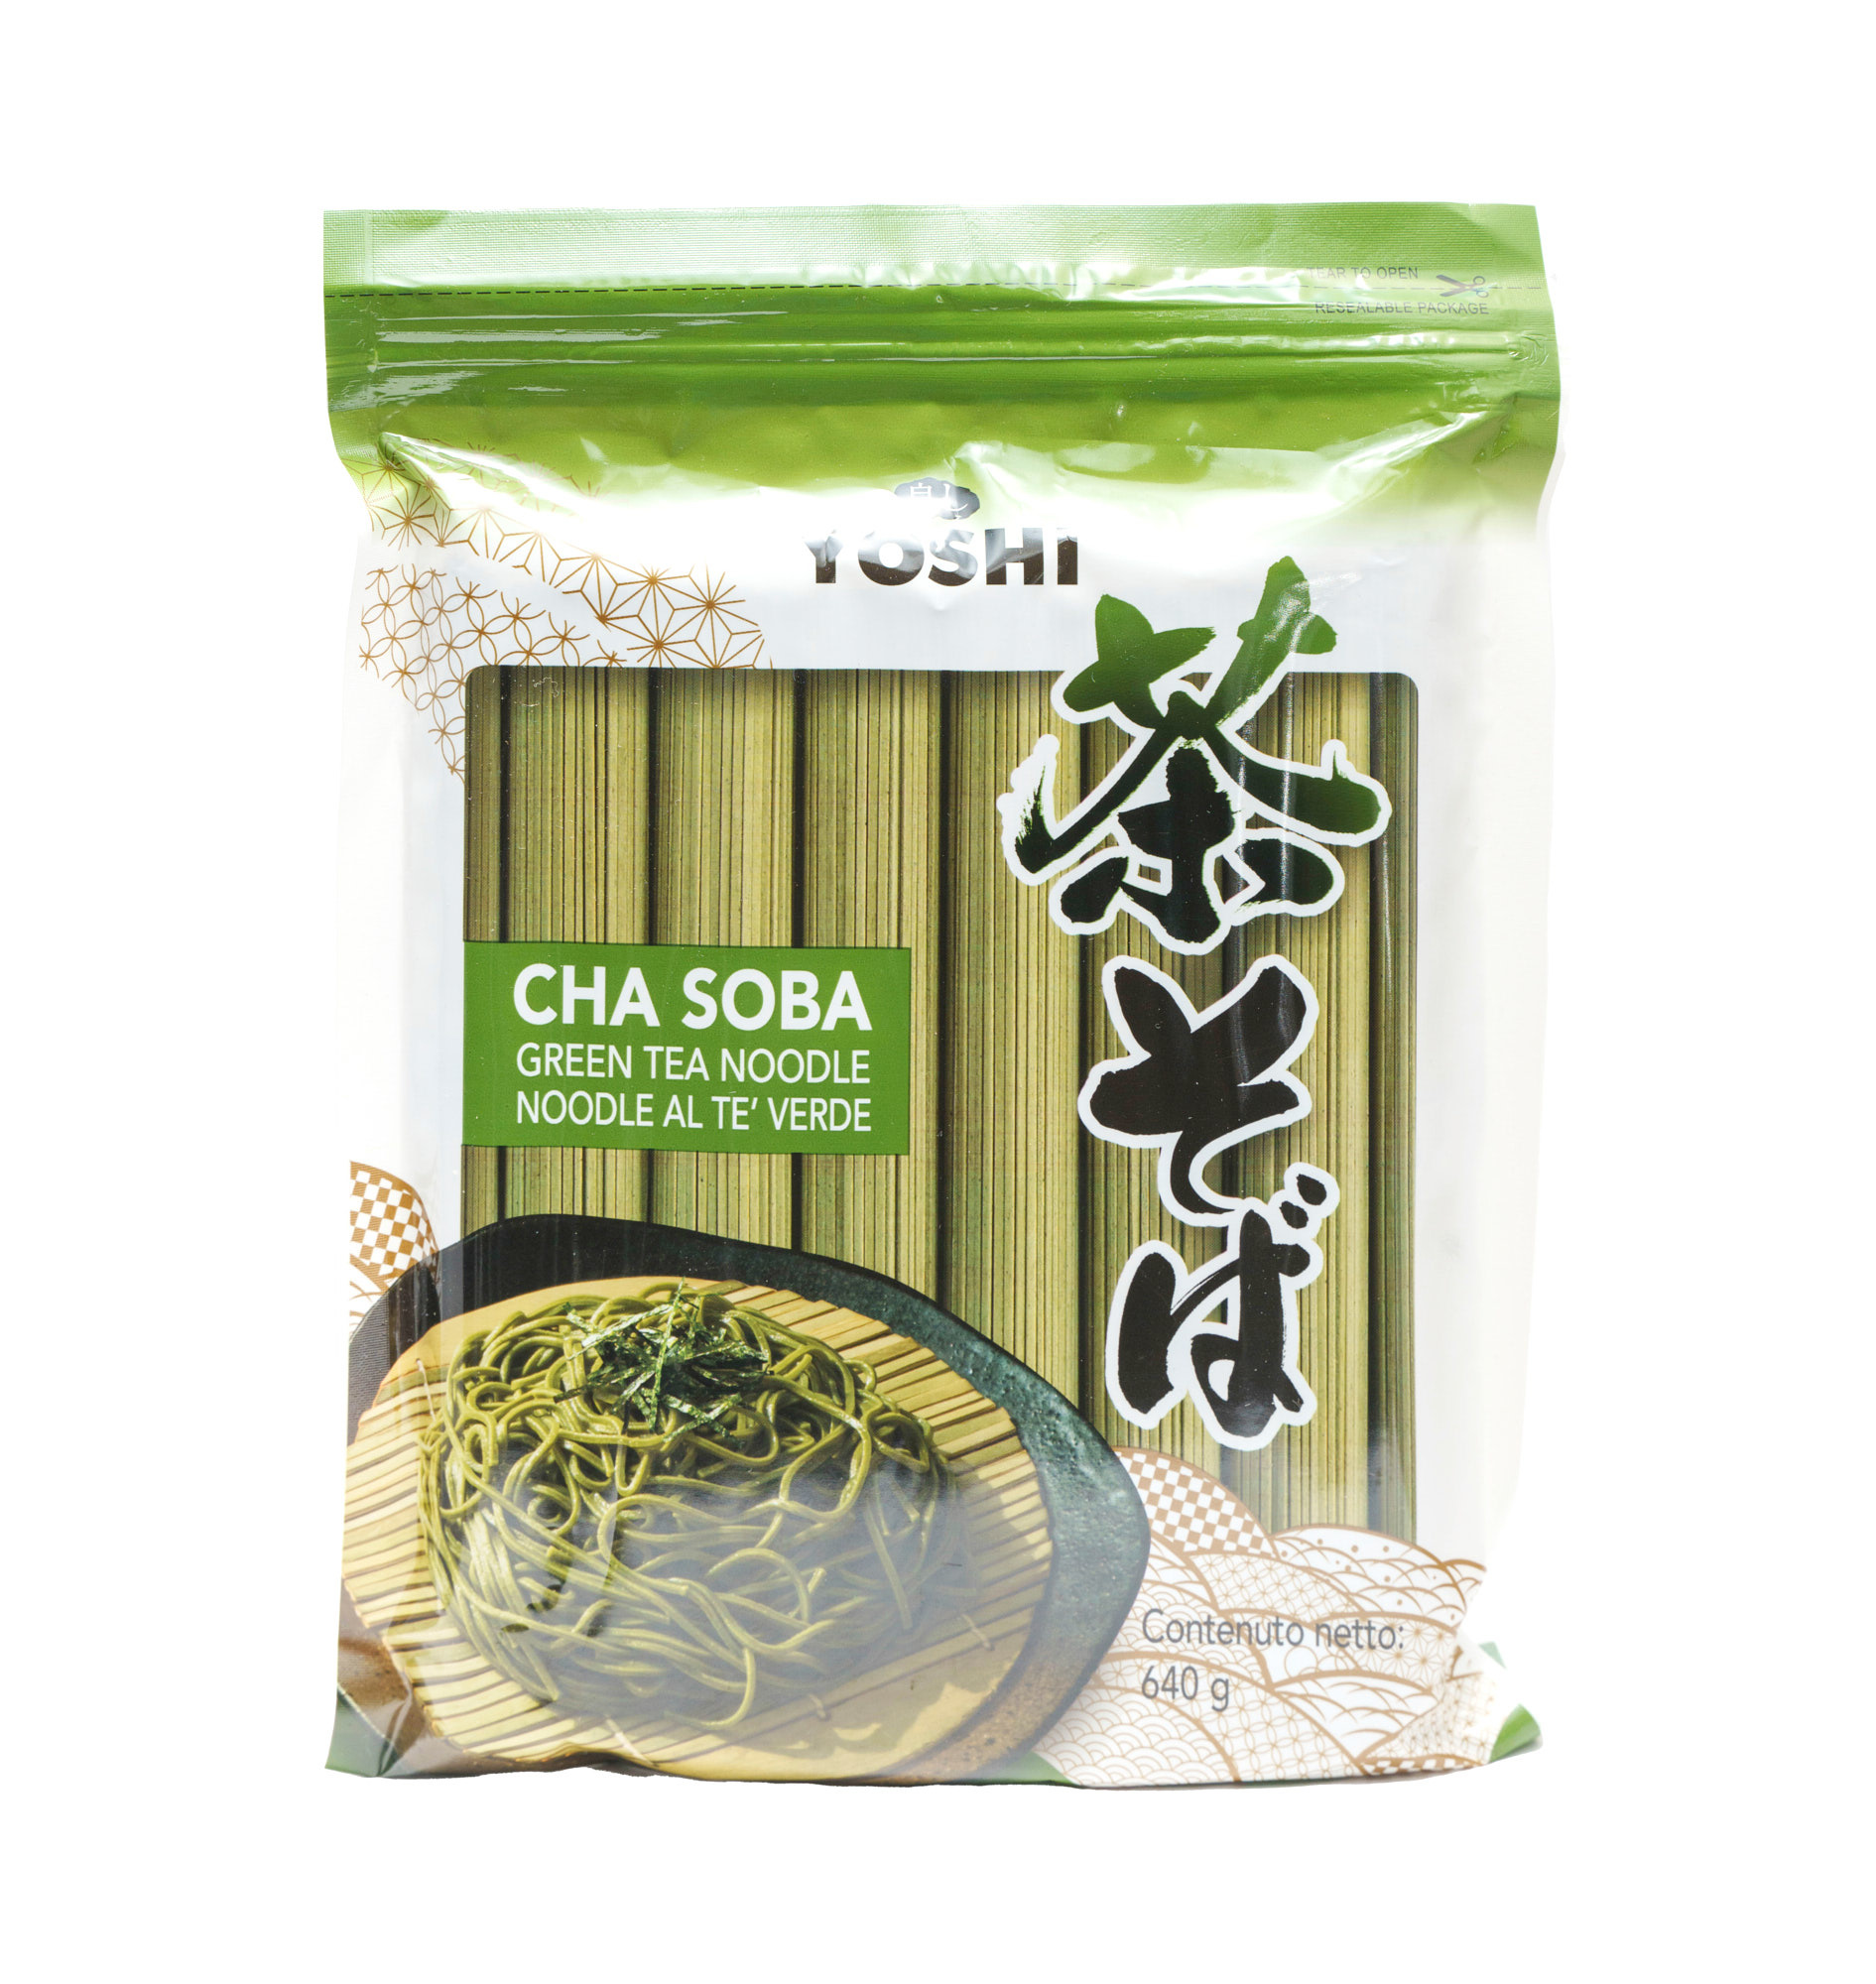 YOSHI Green Tea Noodle (Cha Soba)